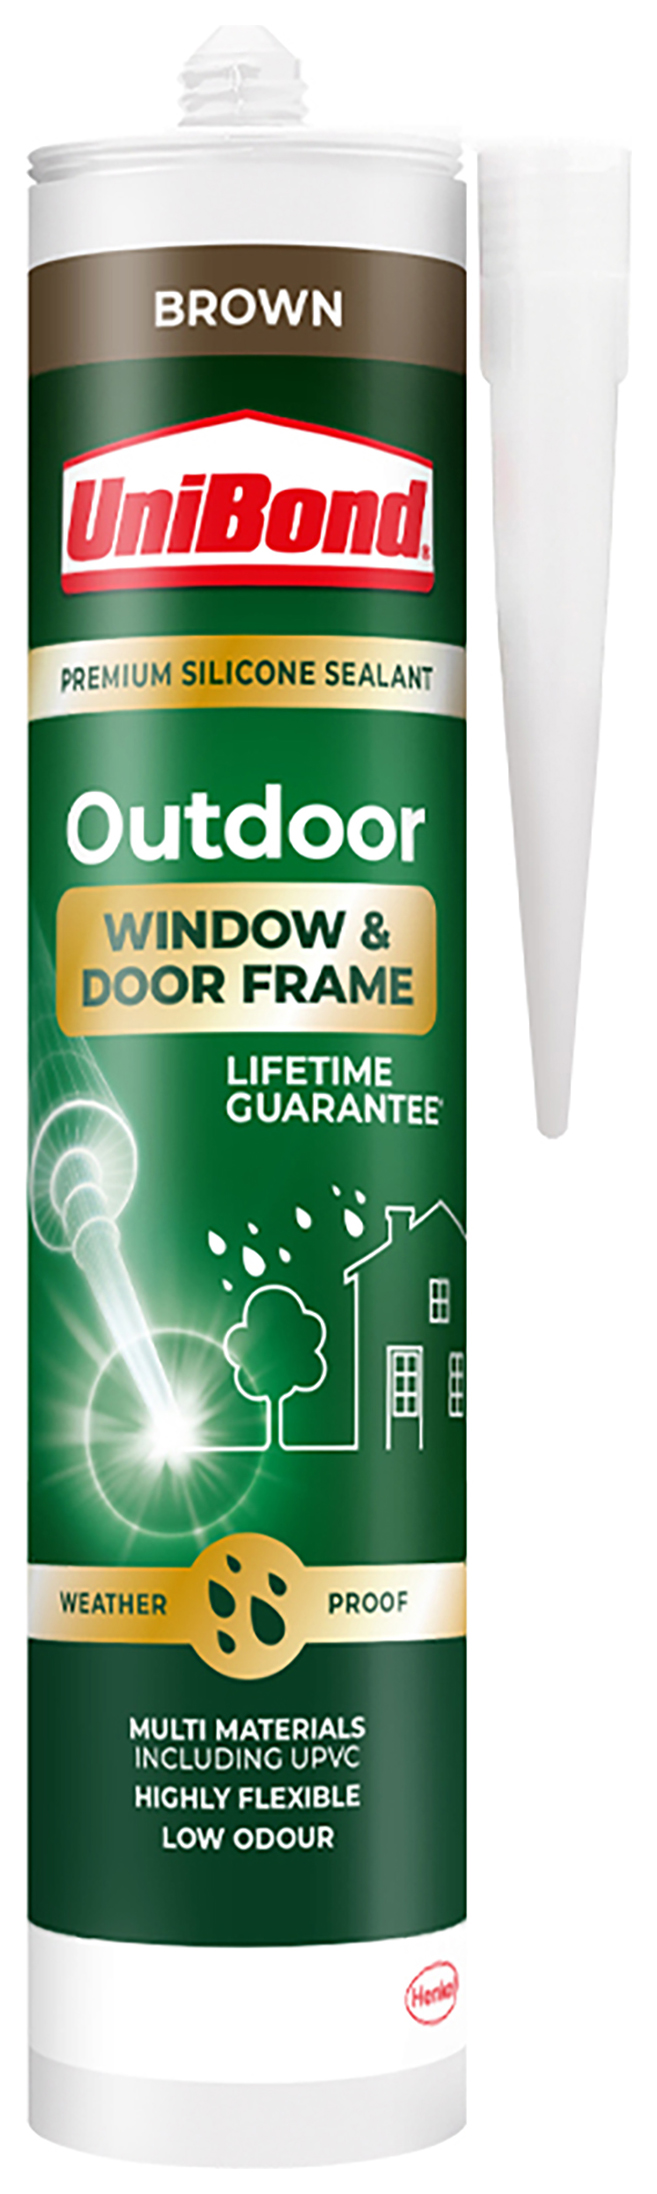 Image of UniBond Outdoor Window & Door Frame Sealant - Brown - 392g